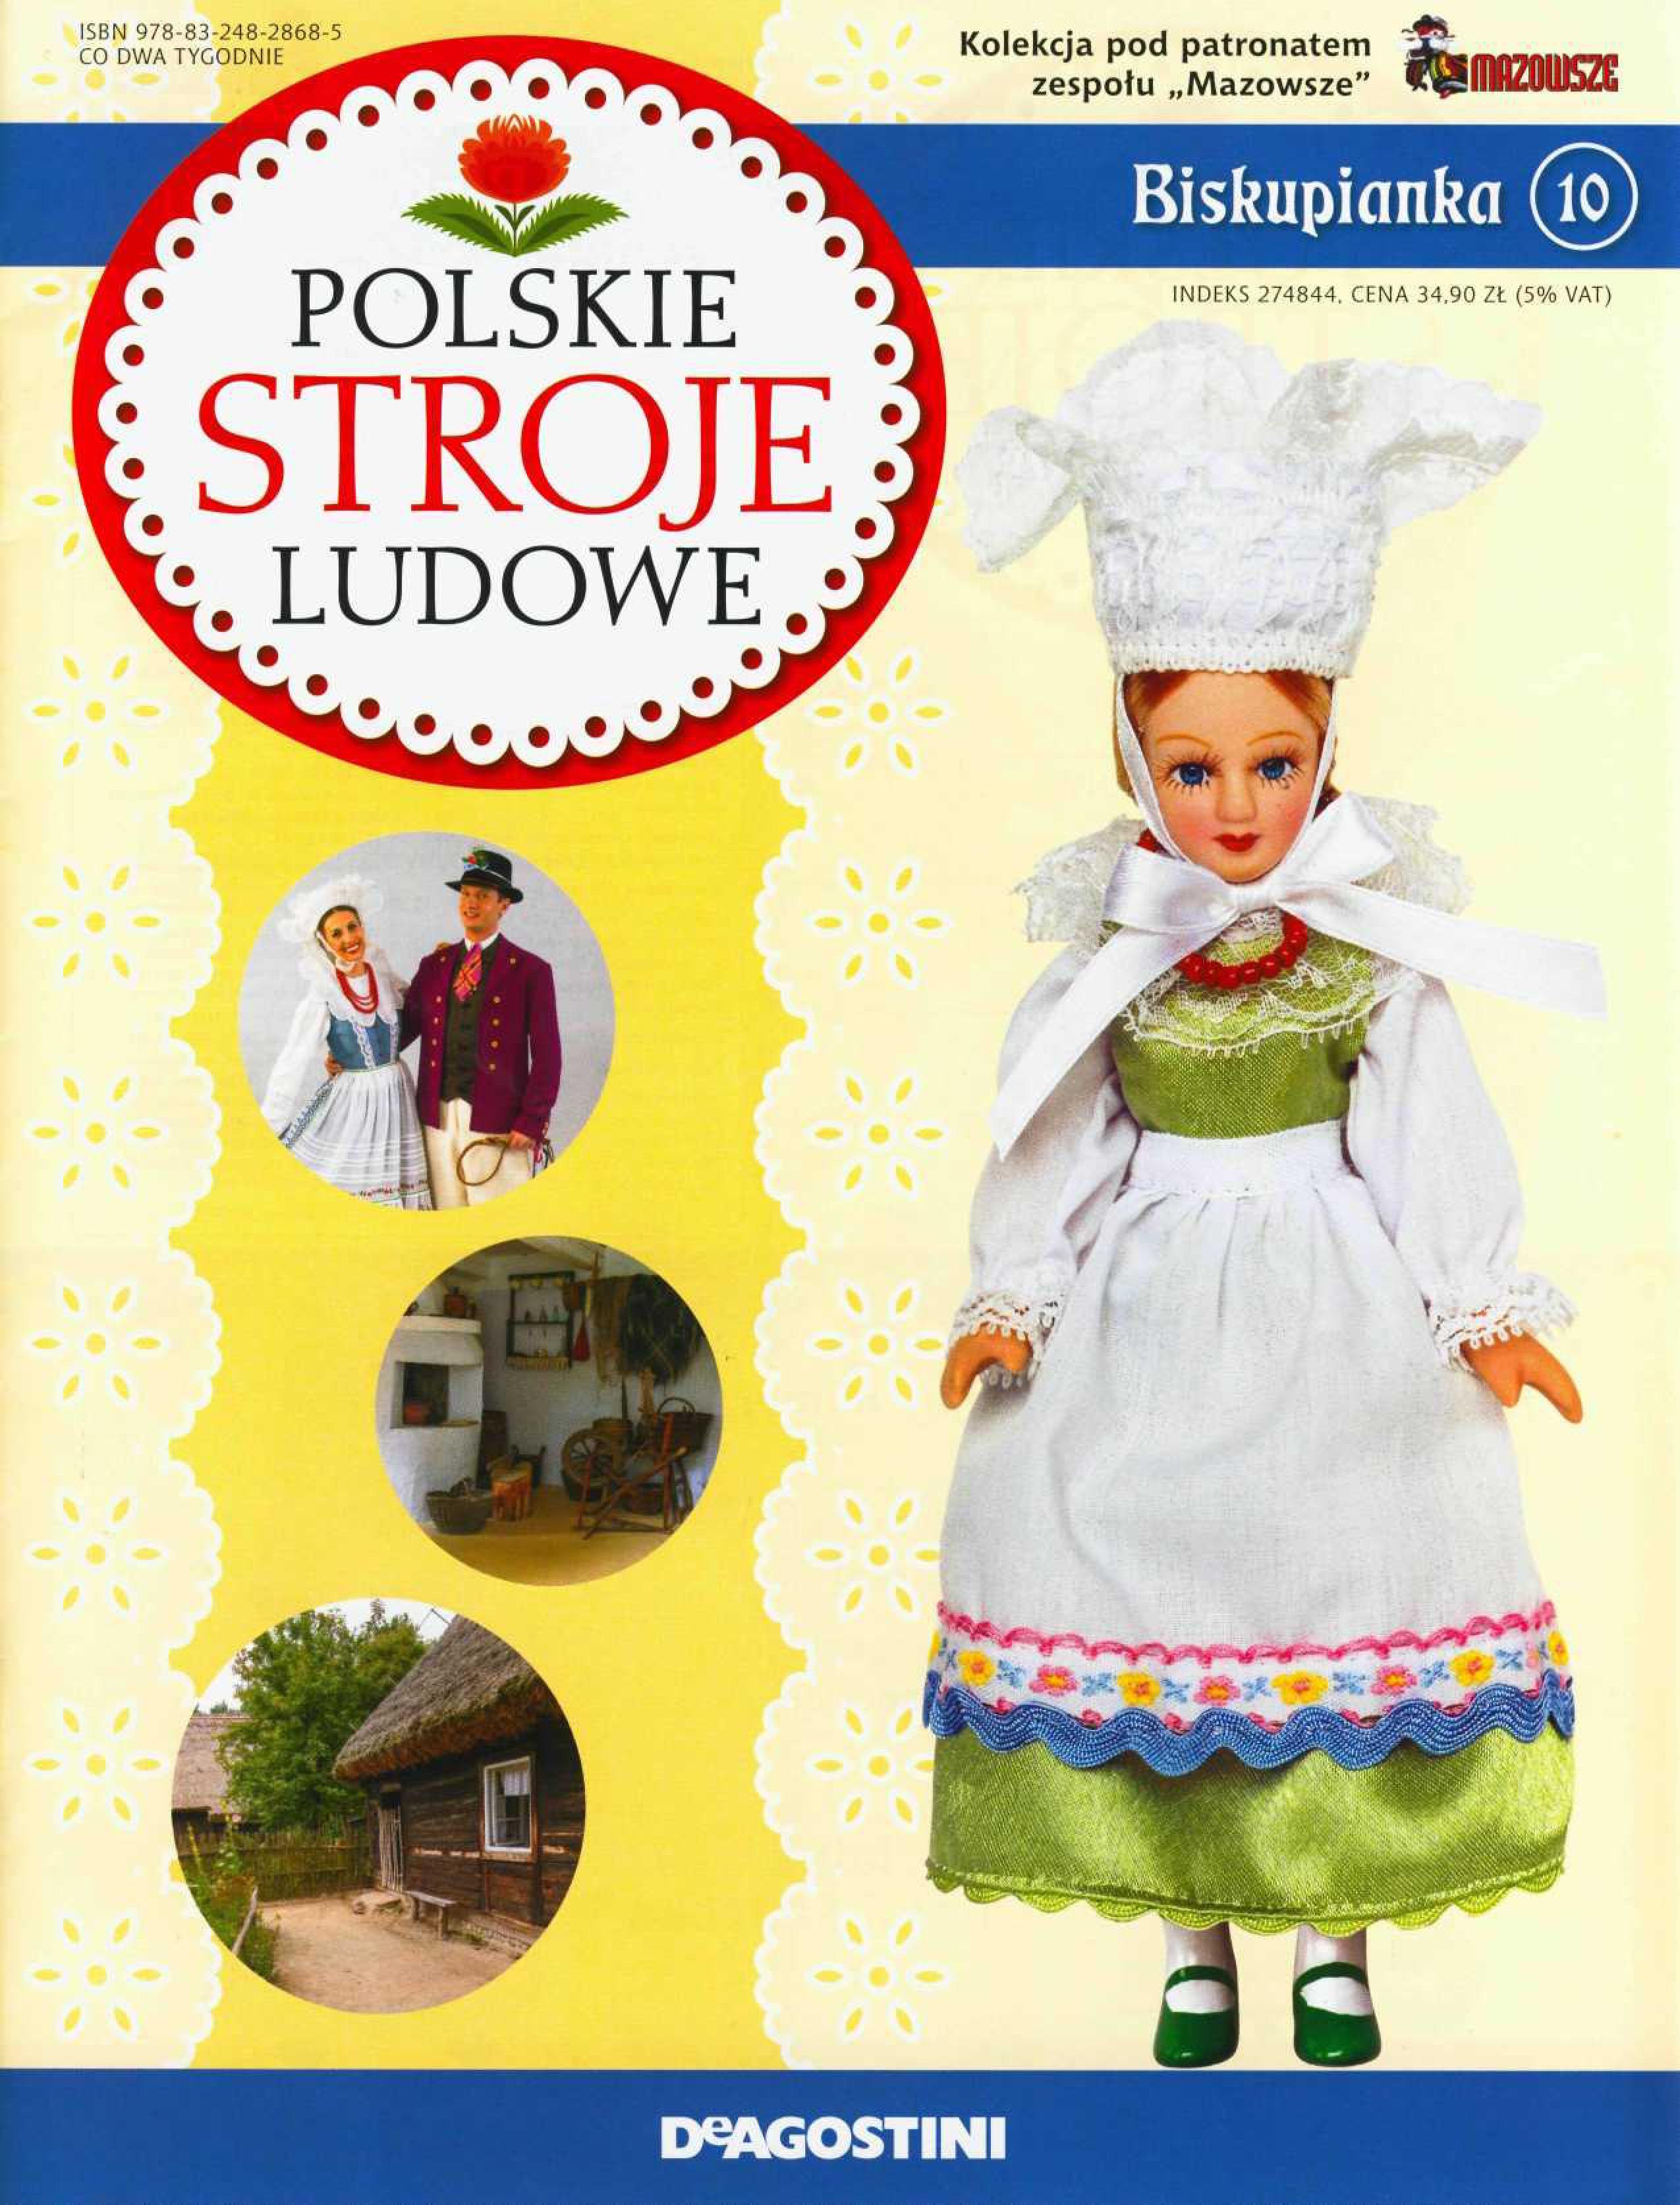 Polskie Stroje Ludowe №010 - Biskupianka-1